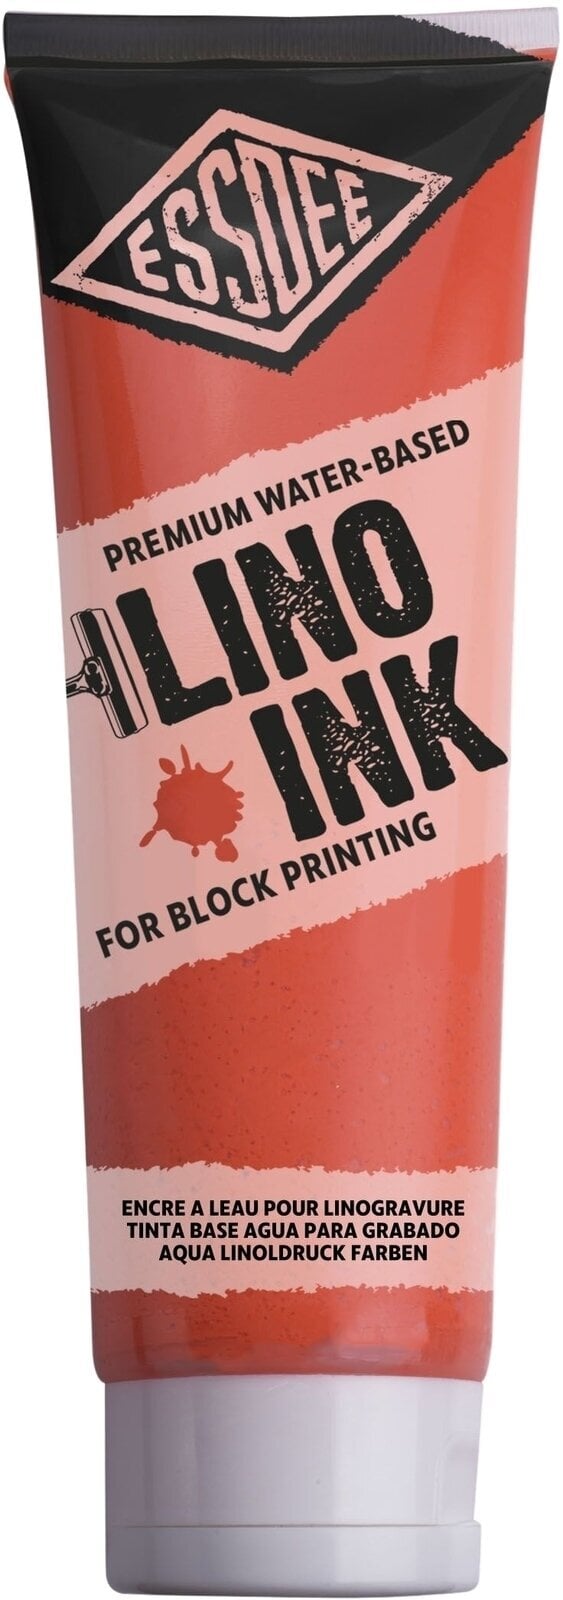 Verf voor linosnede Essdee Block Printing Ink Verf voor linosnede Fluorescent Orange 300 ml